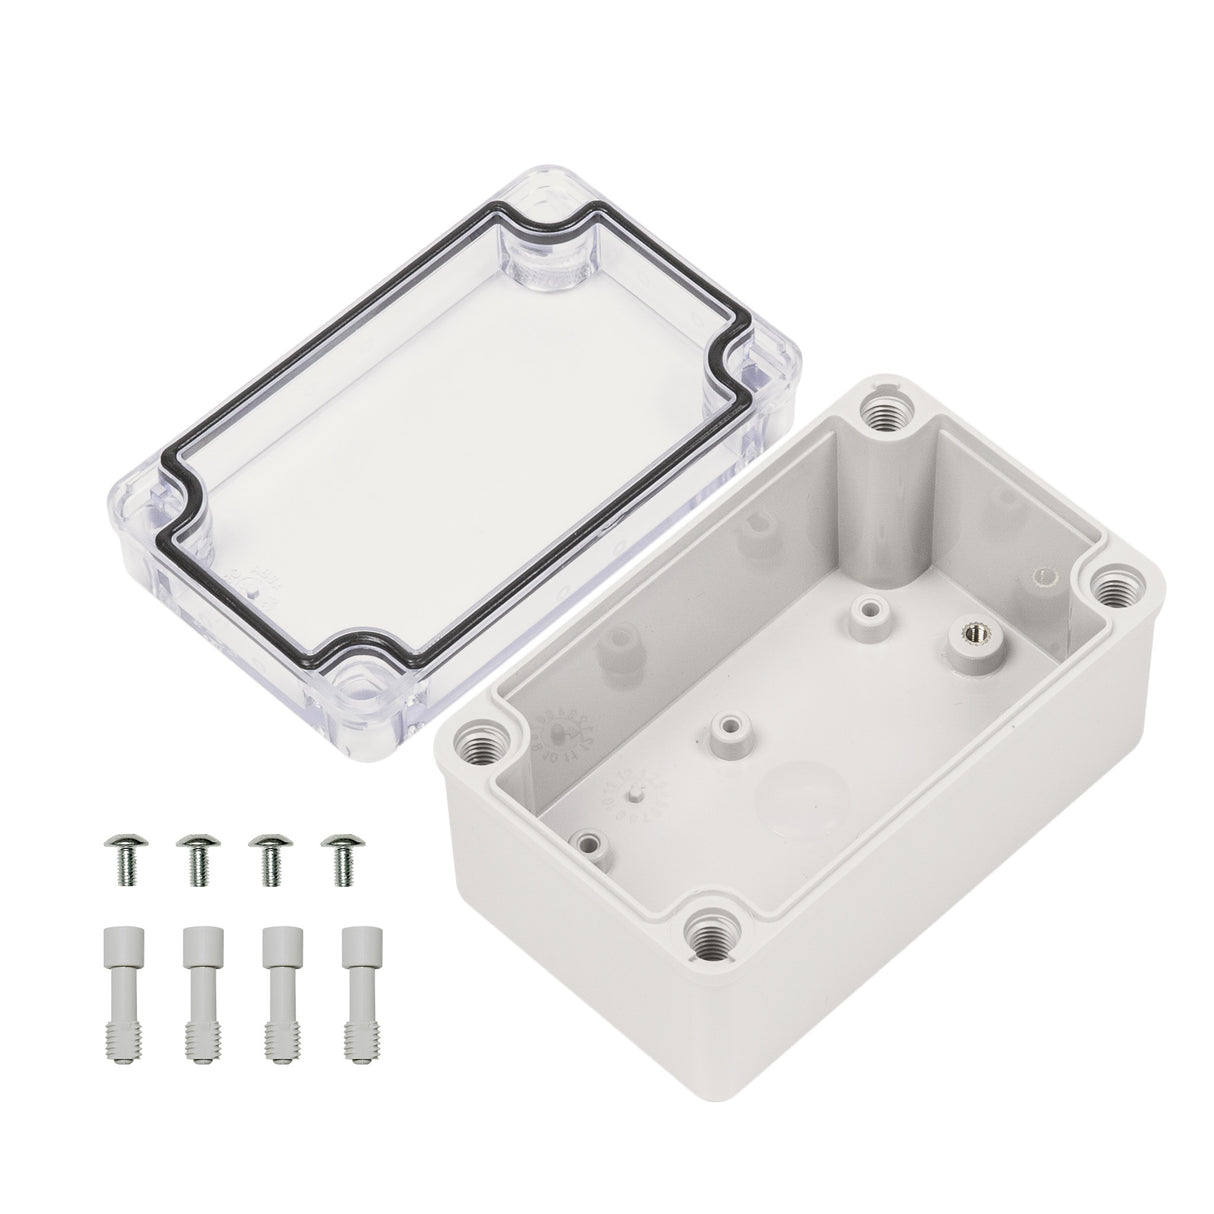 Boxco S-Series 80×130×70mm Plastic Enclosure, IP67, IK08, ABS, Transparent Cover, Screw Type